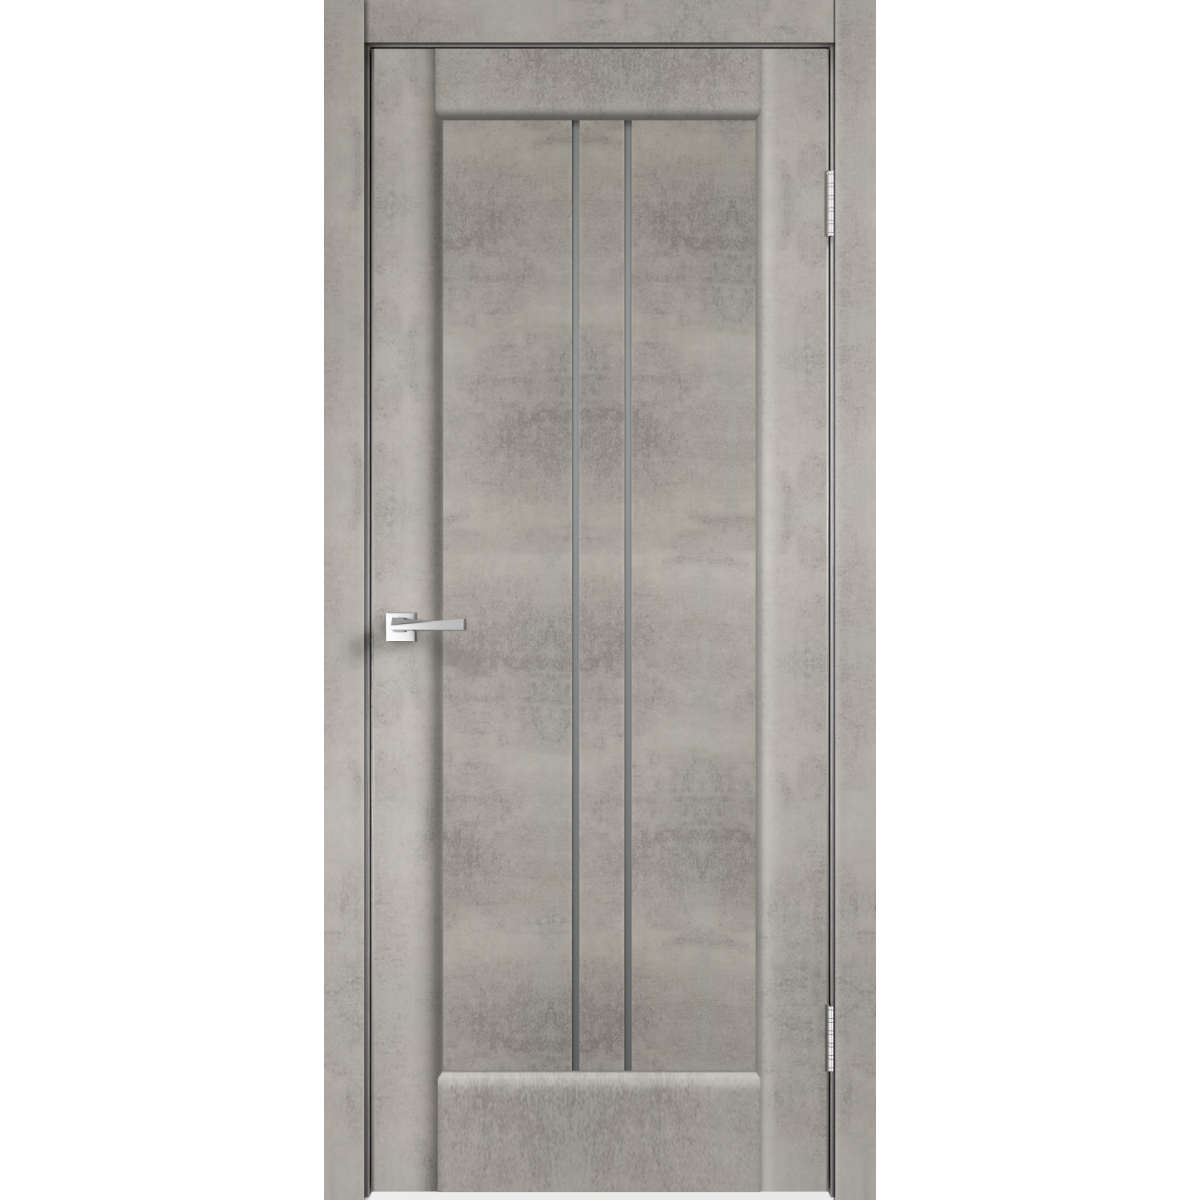 Дверь межкомнатная остеклённая «Сиэтл», 90x200 см, ПВХ, цвет лофт светлый, с фурнитурой